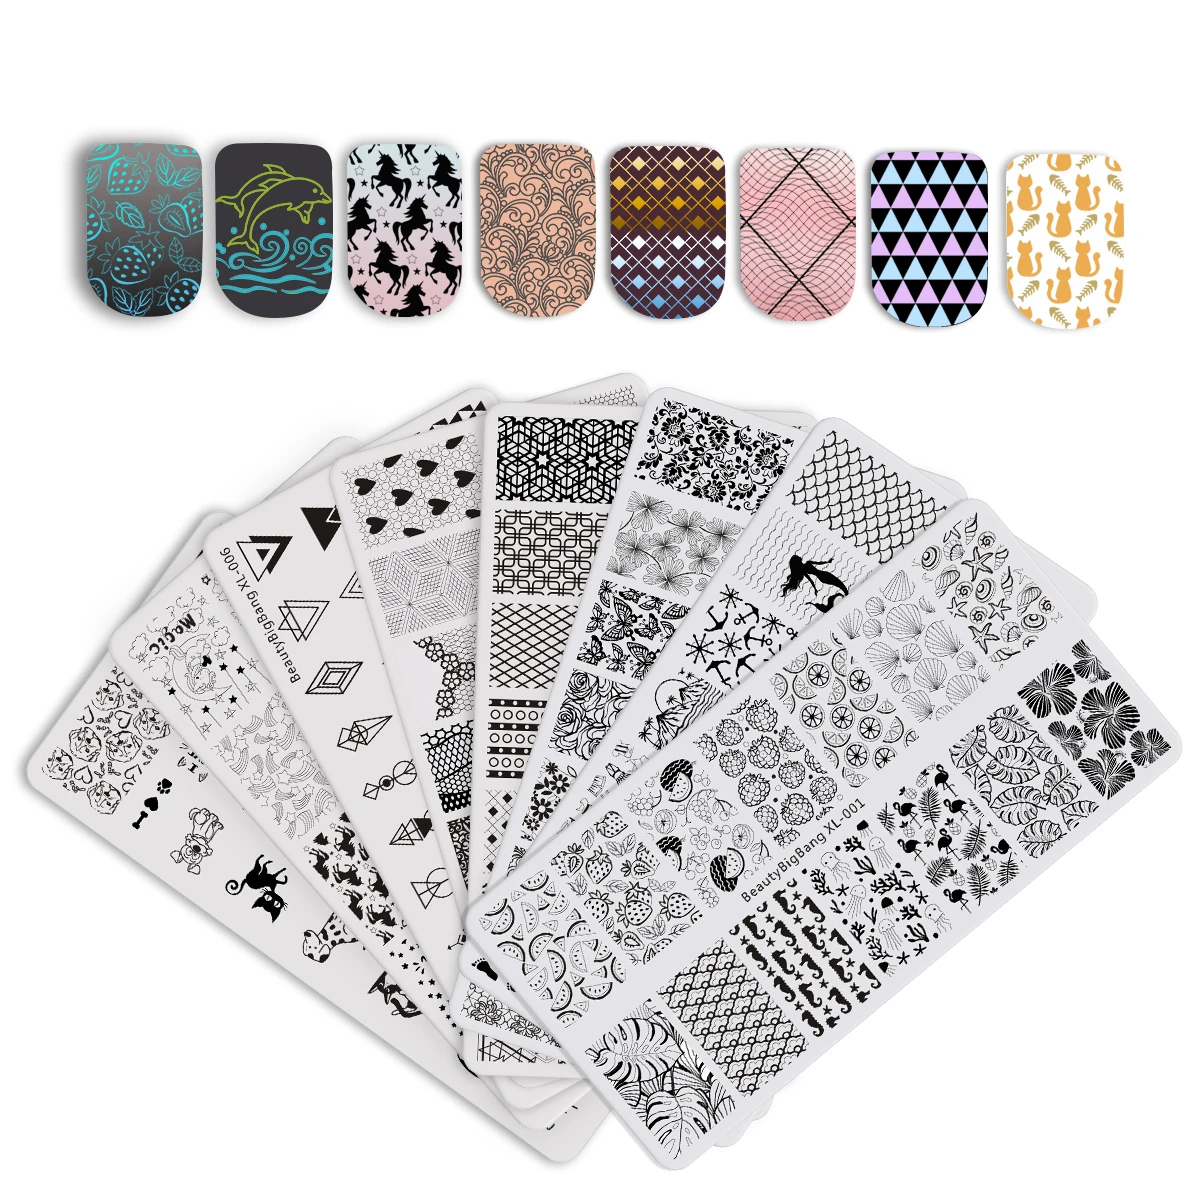 BeautyBigBang 6*12 см прямоугольные пластины для штамповки ногтей, трафареты для дизайна ногтей в животном стиле с геометрическим рисунком